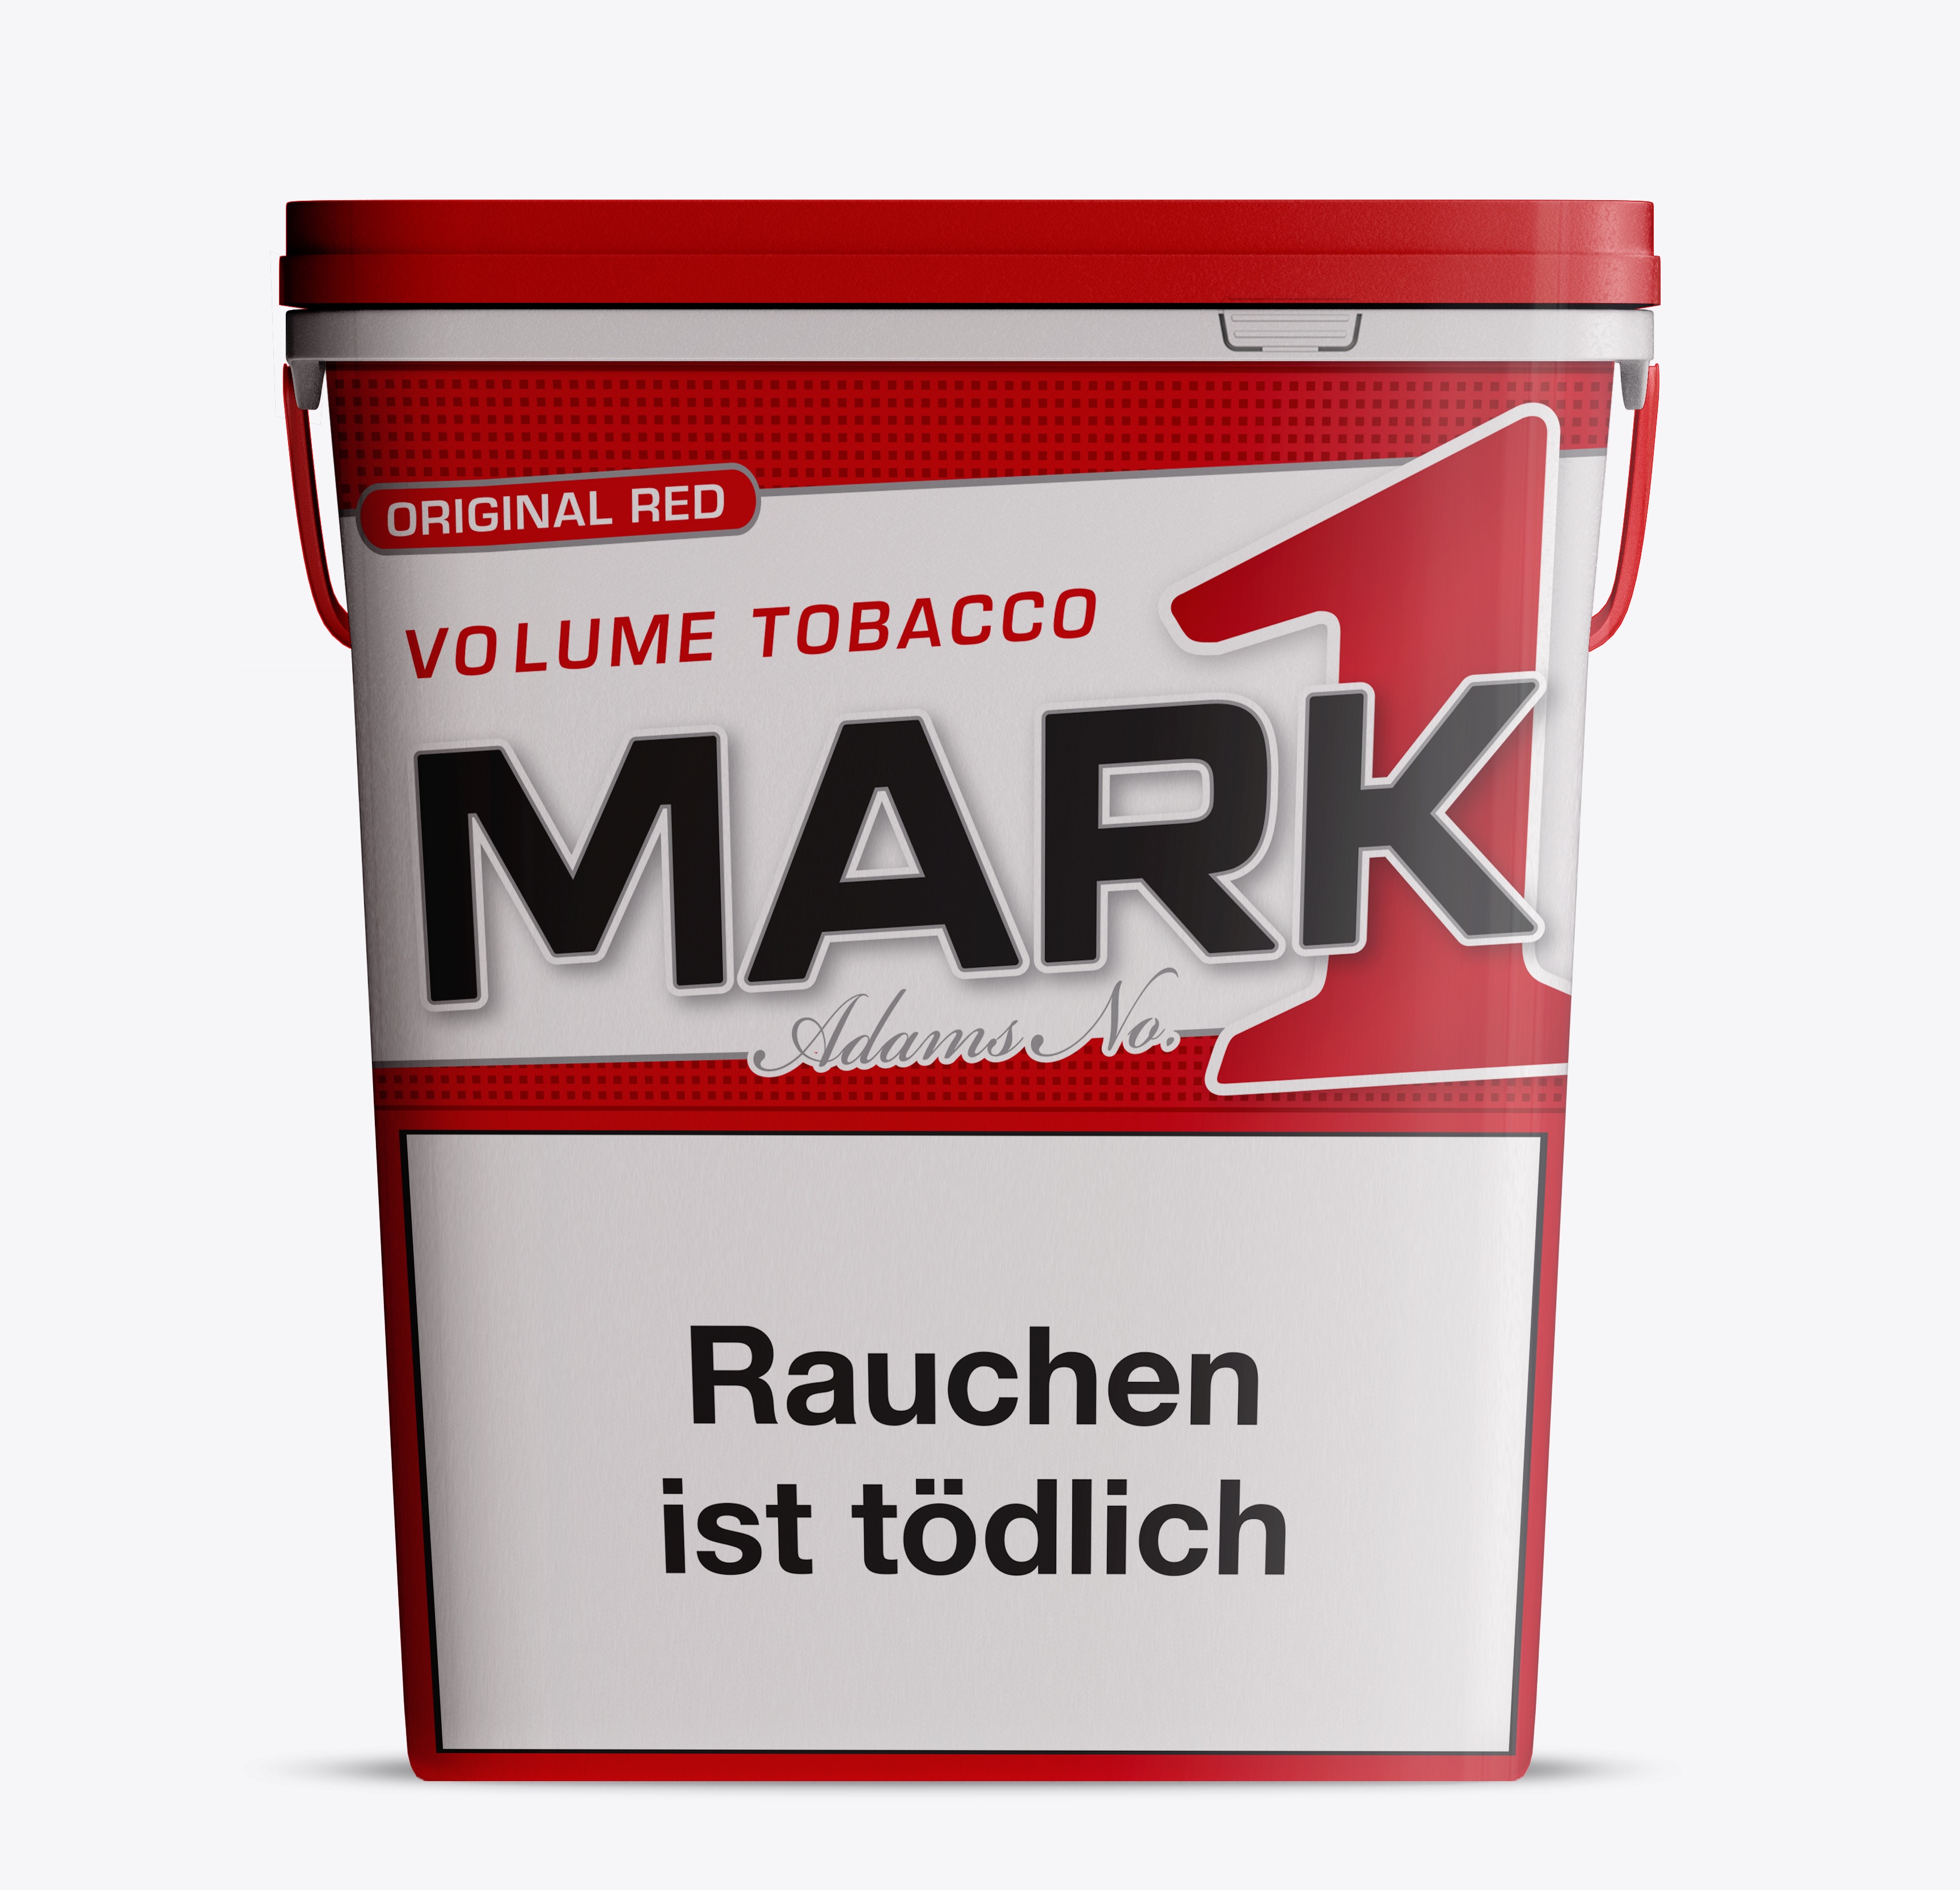 MARK ADAMS No. 1 Volume Tobacco 320 Gramm 